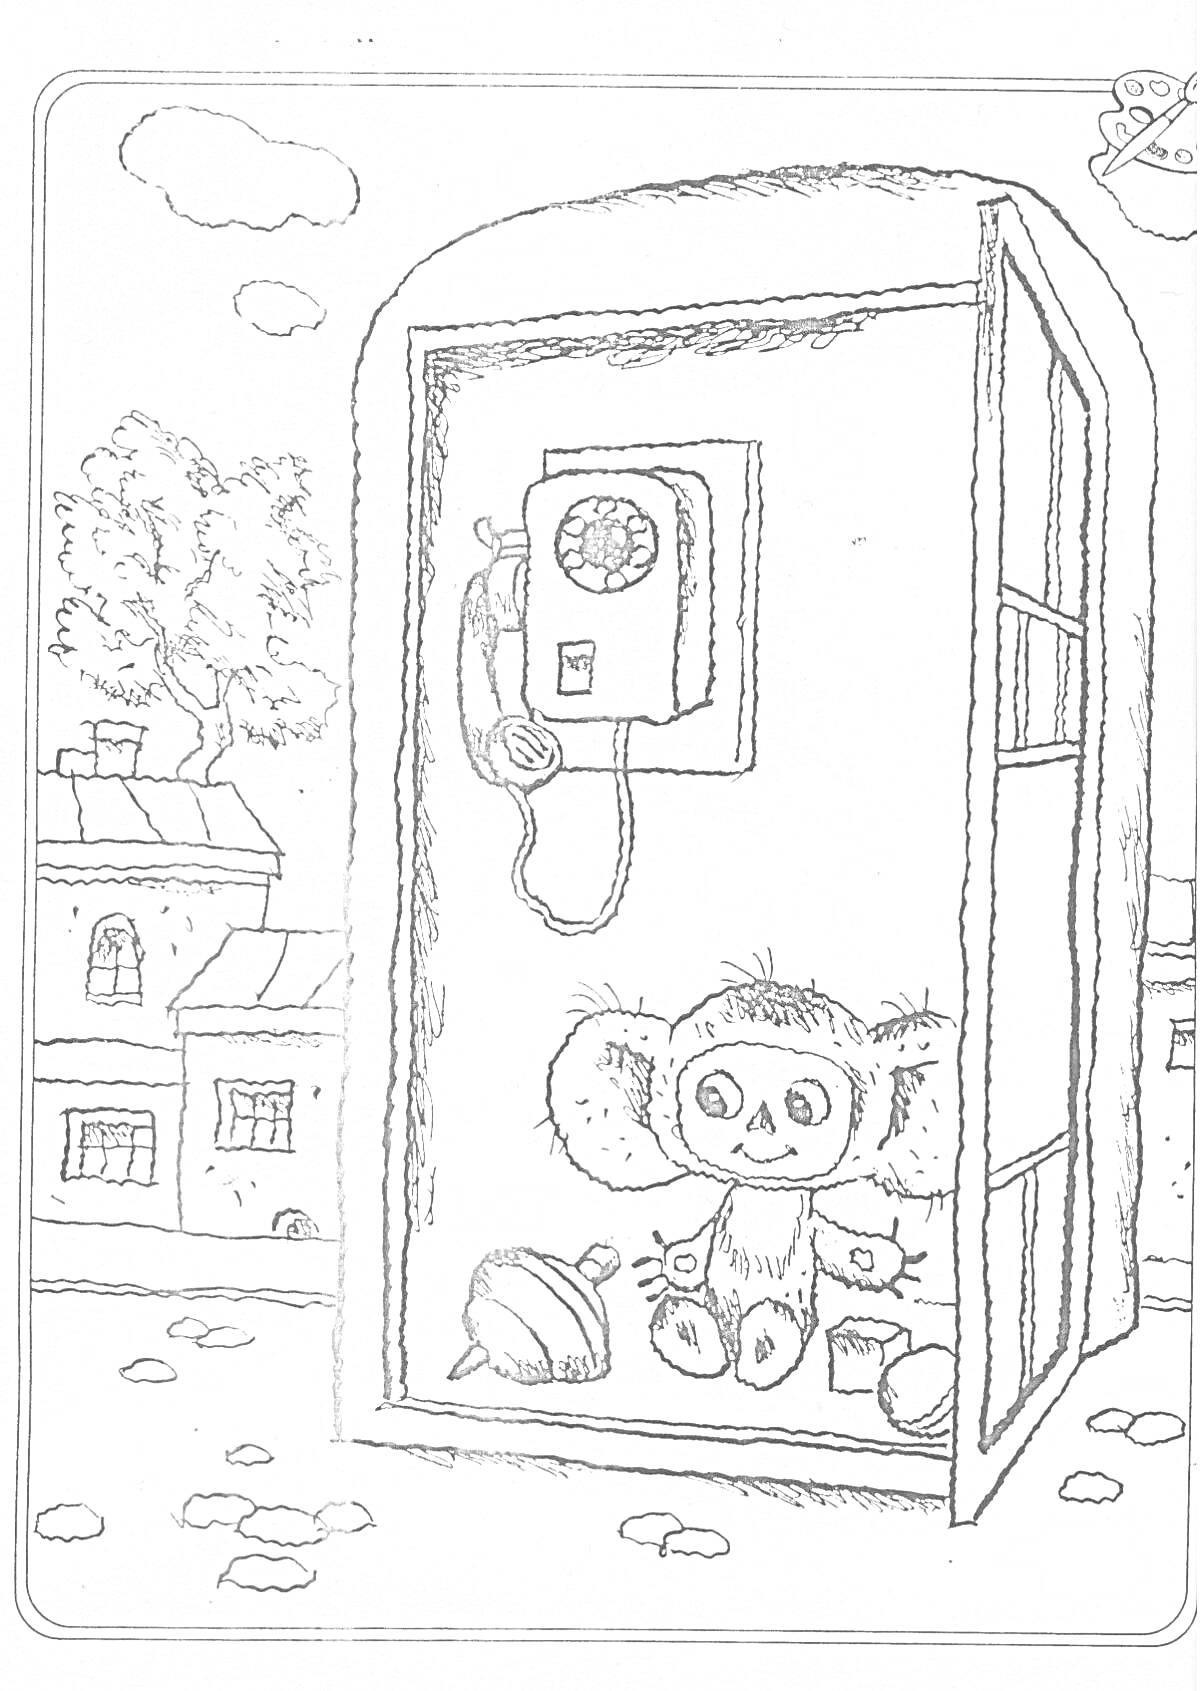 Чебурашка в телефонной будке с телефоном, здания и дерево на заднем фоне